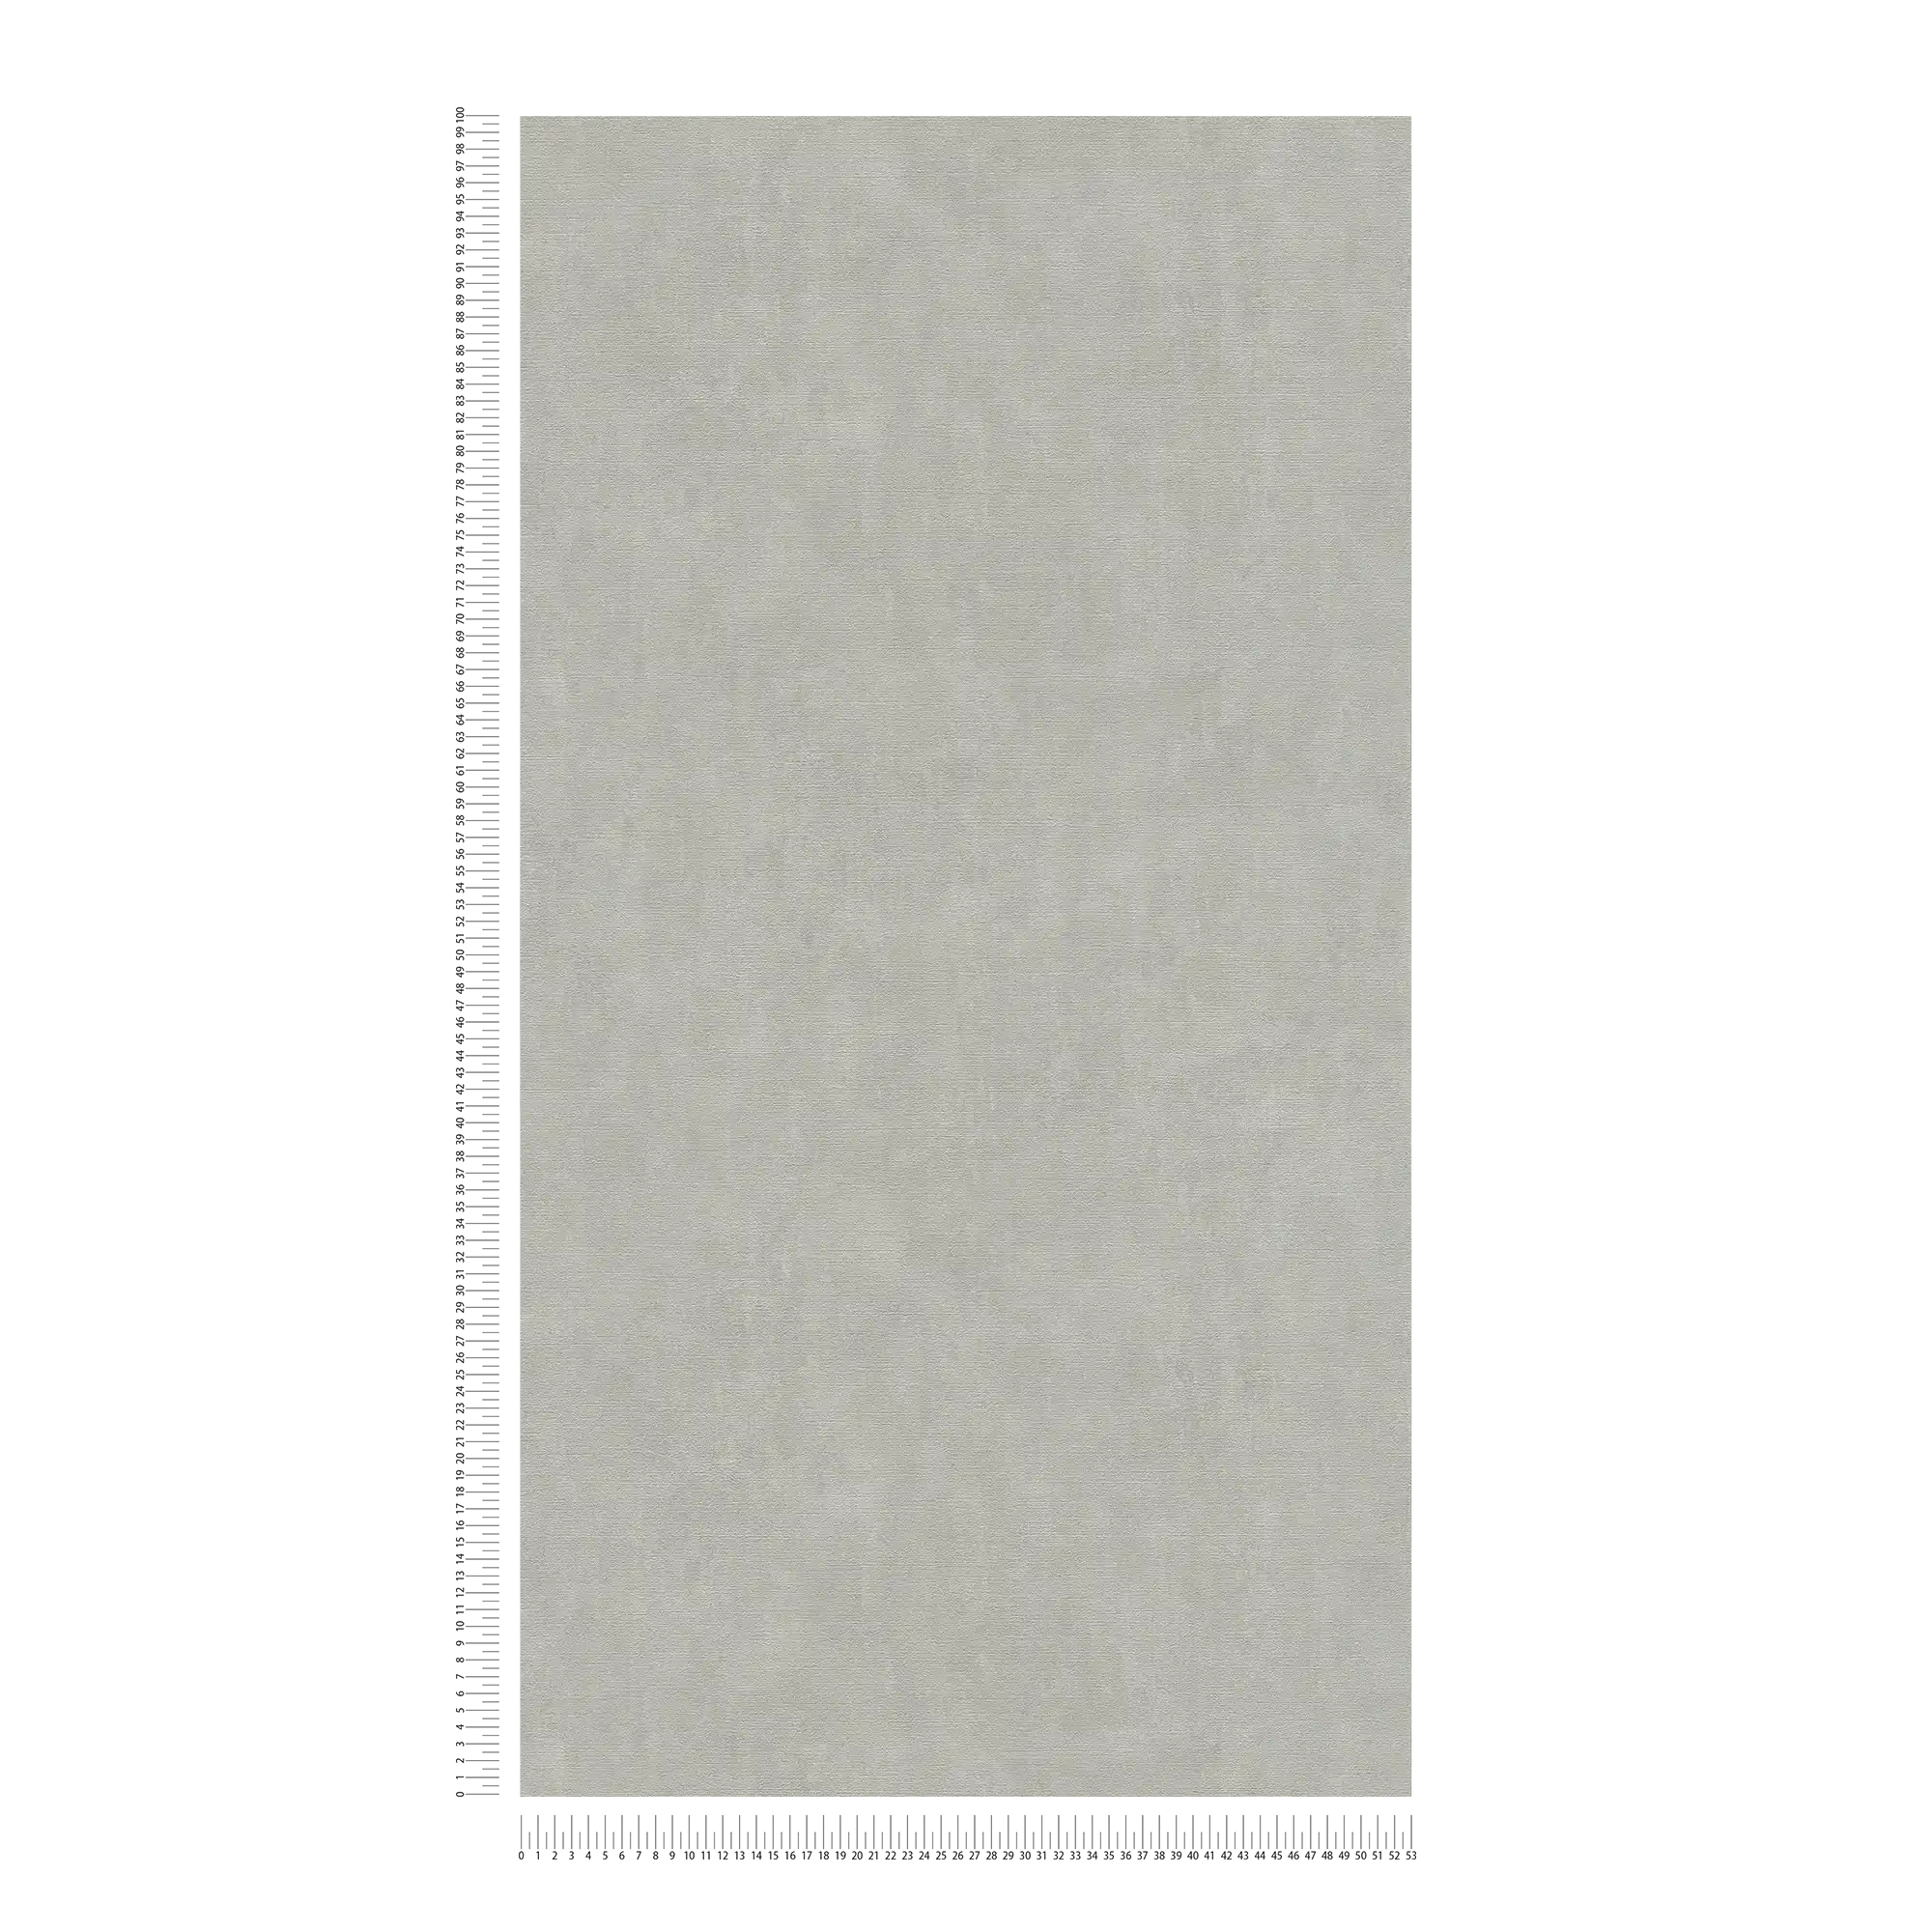             Papel pintado beige gris con aspecto de yeso en estilo vintage
        